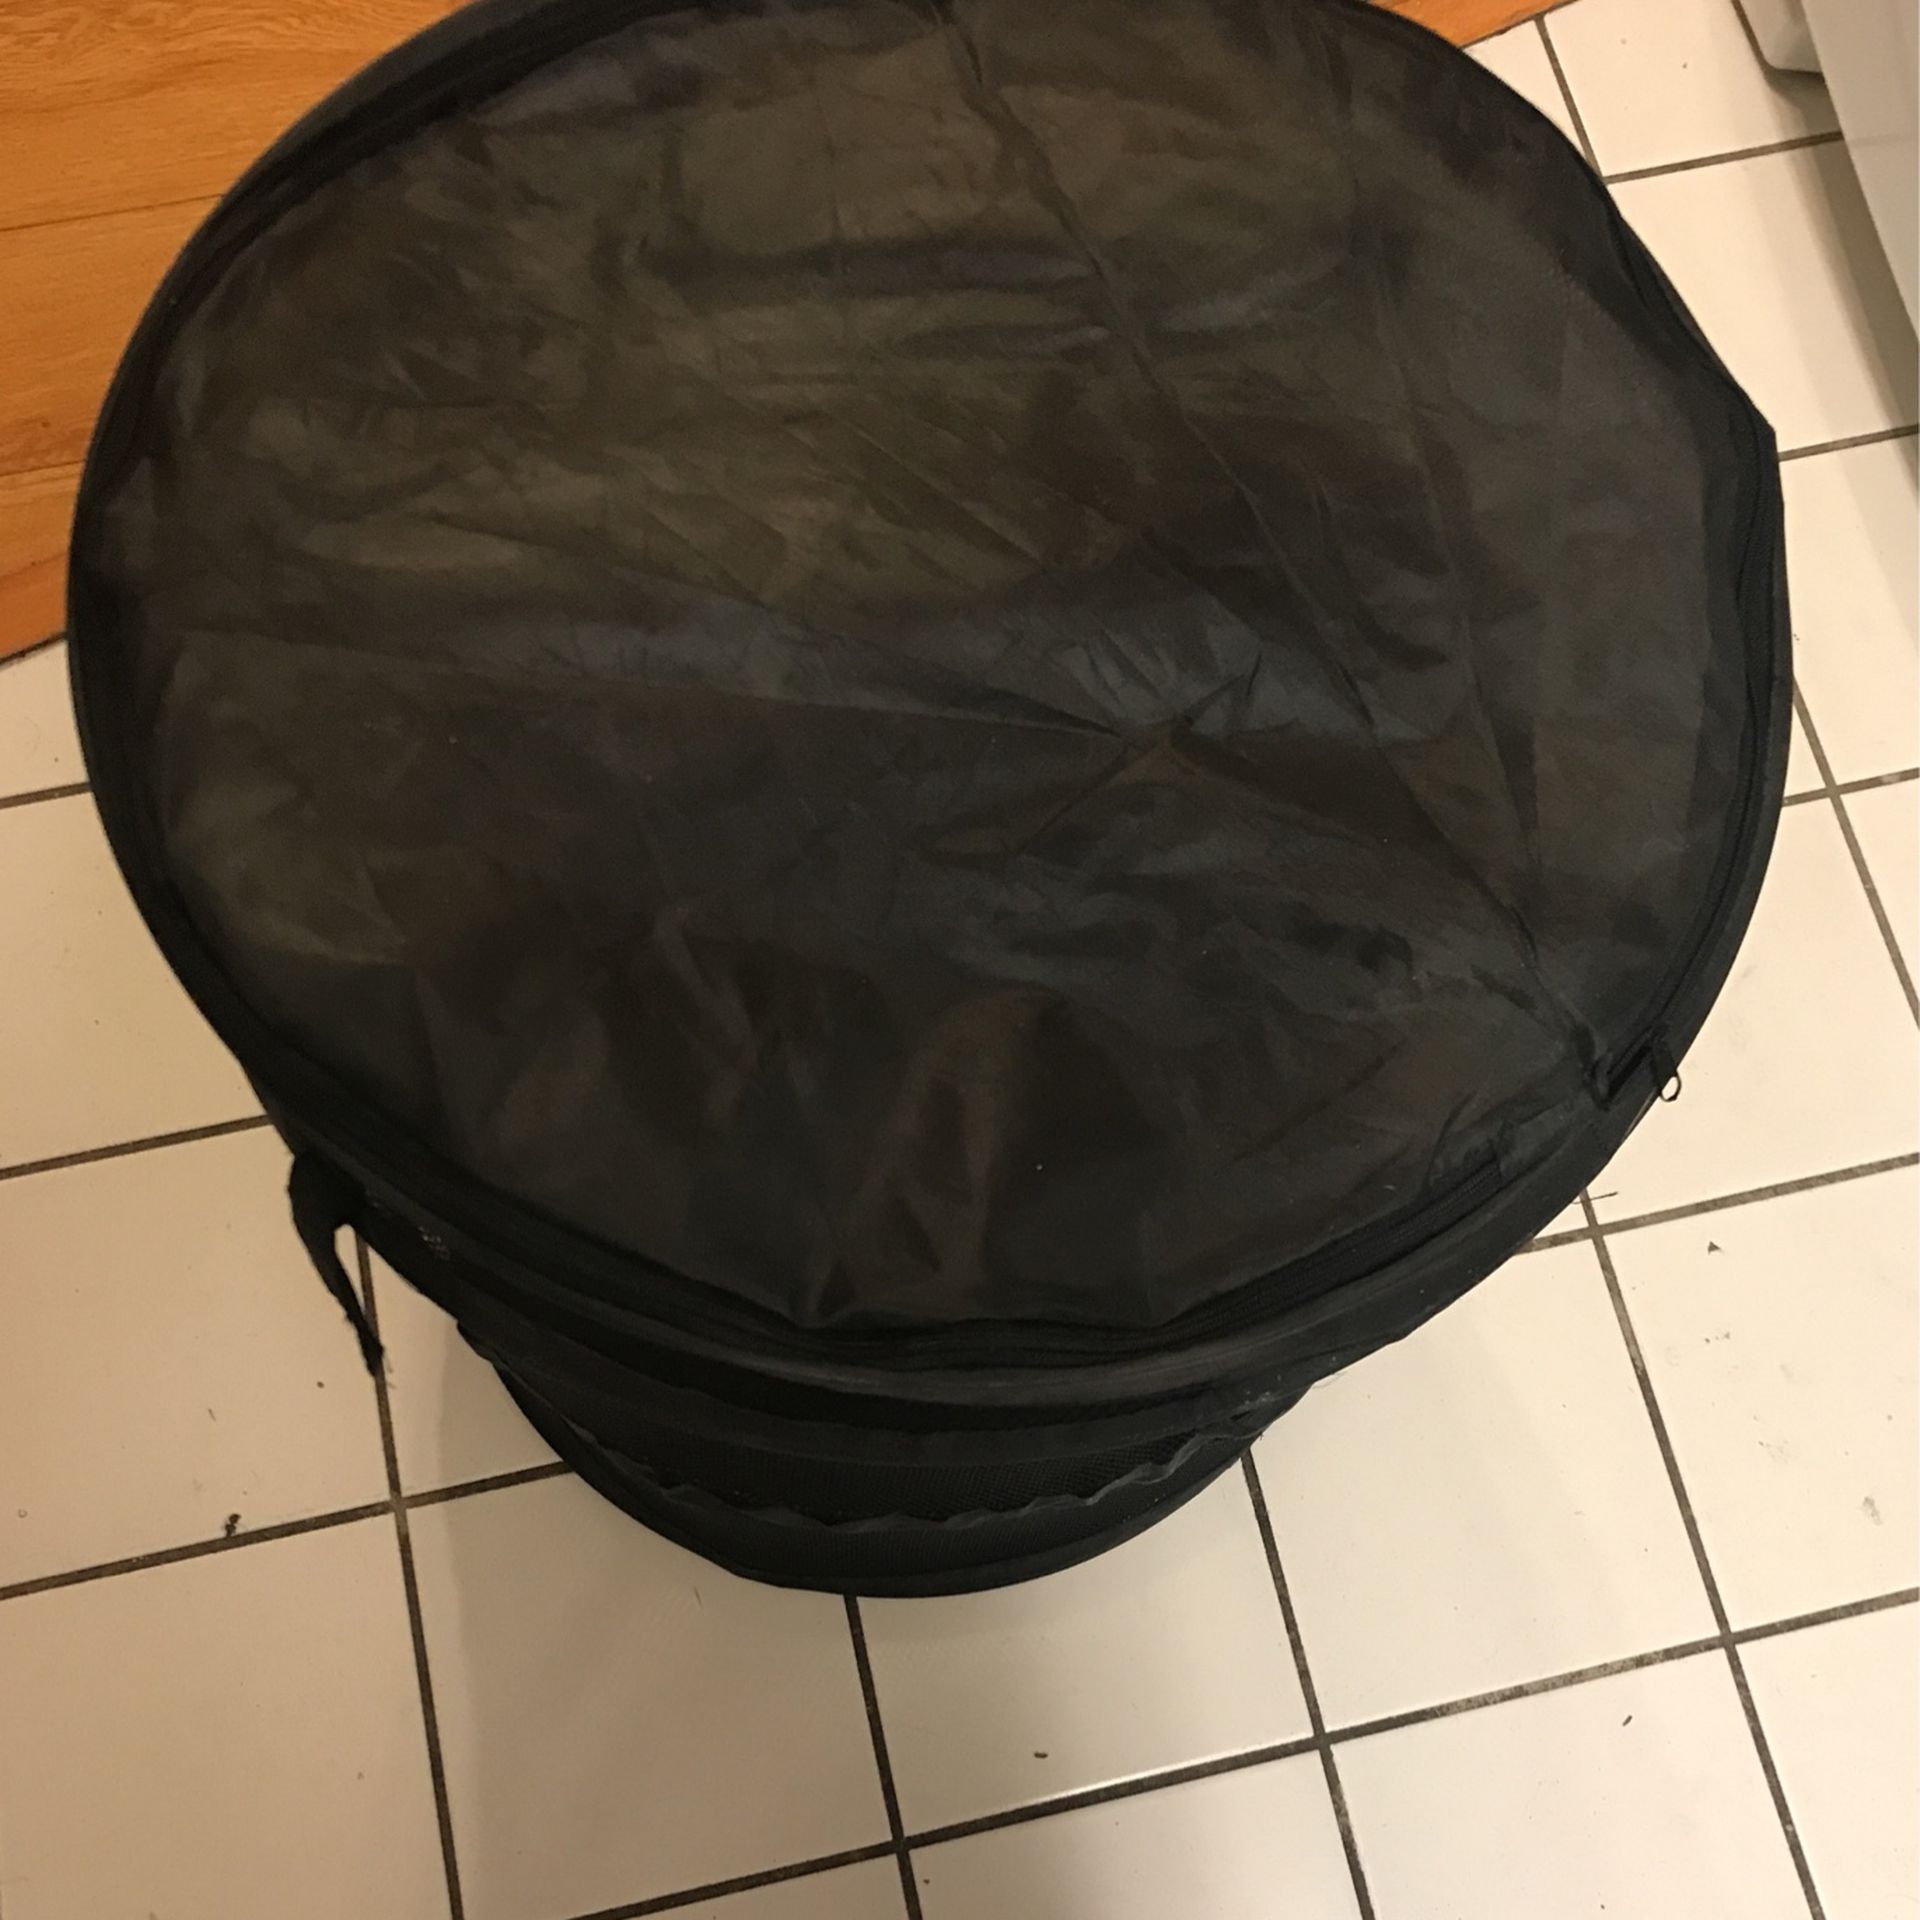 New Pop-Up-Mesh-Hamper-Storage-Laundry-Bag-Basket